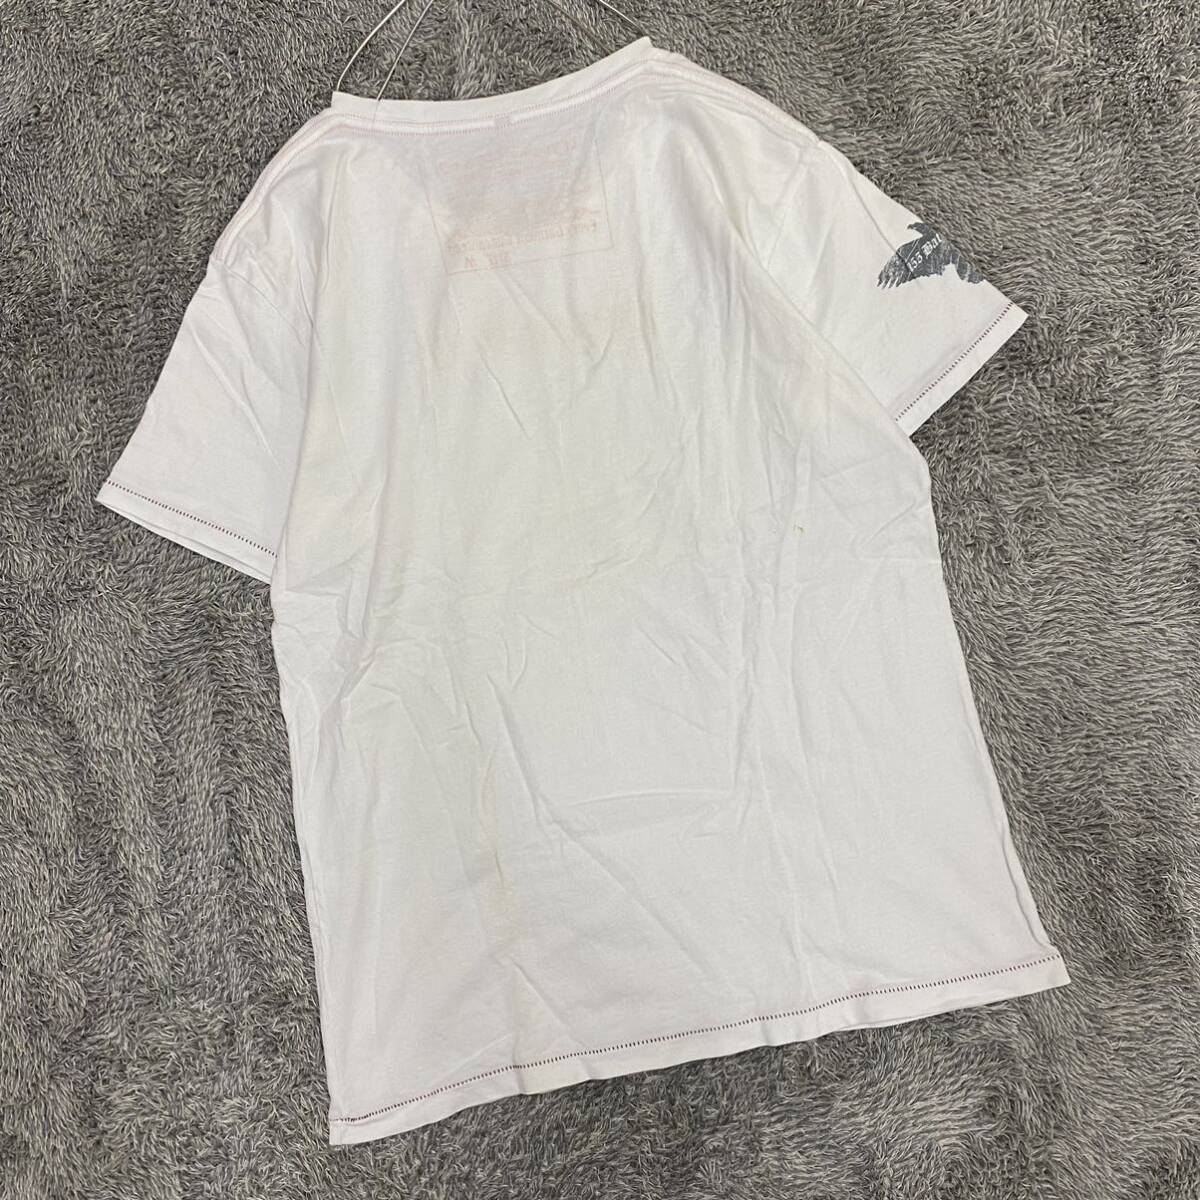 Levi's リーバイス Tシャツ 半袖カットソー サイズM ホワイト 白 メンズ トップス 最落なし （Q19）_画像2